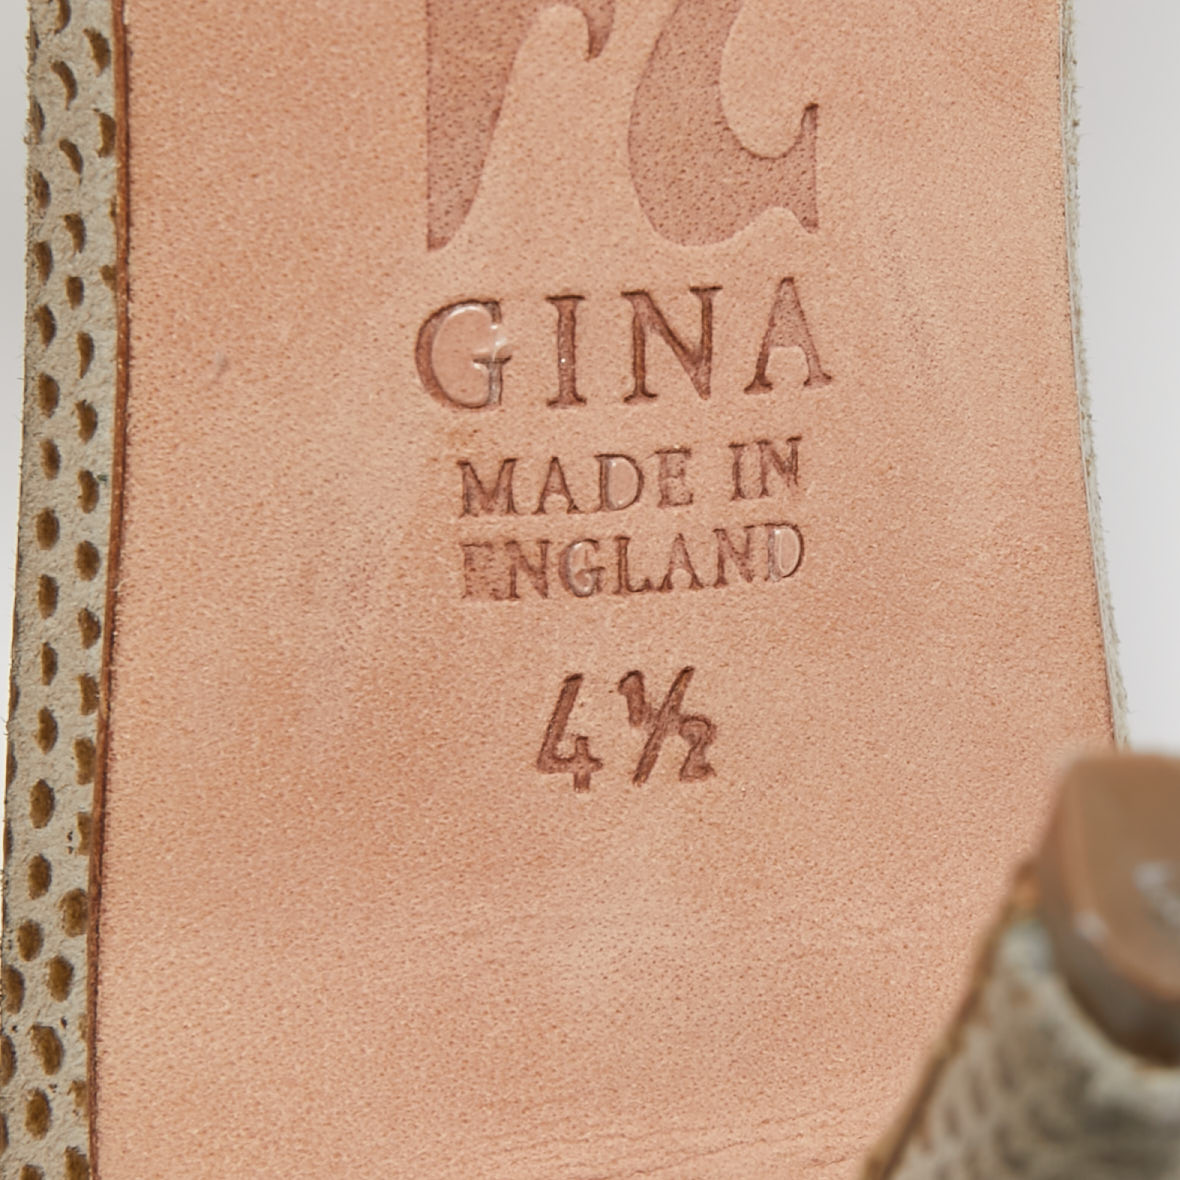 Gina Silver Crystal Embellished Leather Slide Sandals Size 37.5